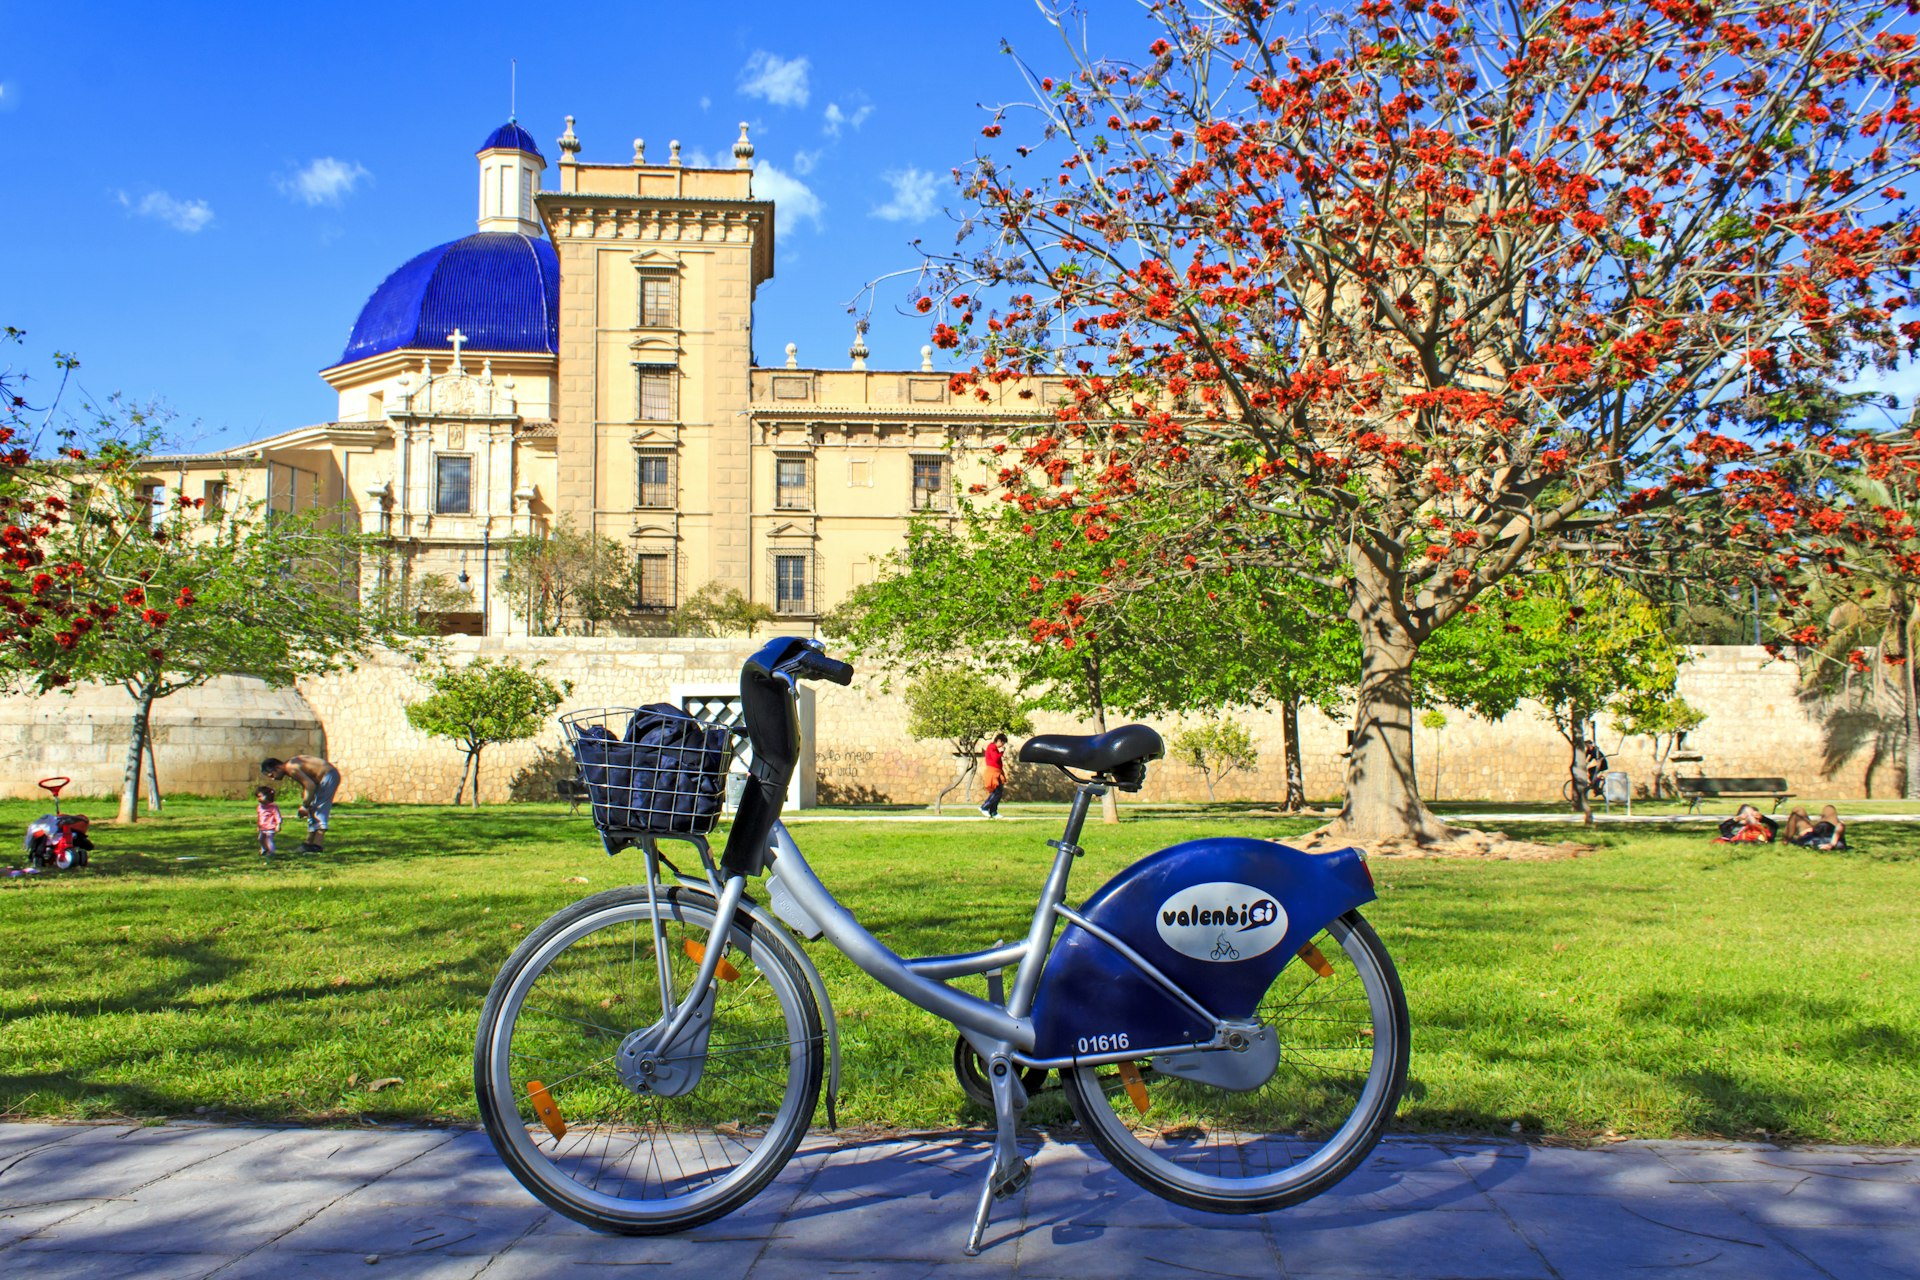 Aluguer gratuito de bicicletas urbanas "Valenbisi" em Valência em frente ao Museu de Belas Artes de Valência, Espanha